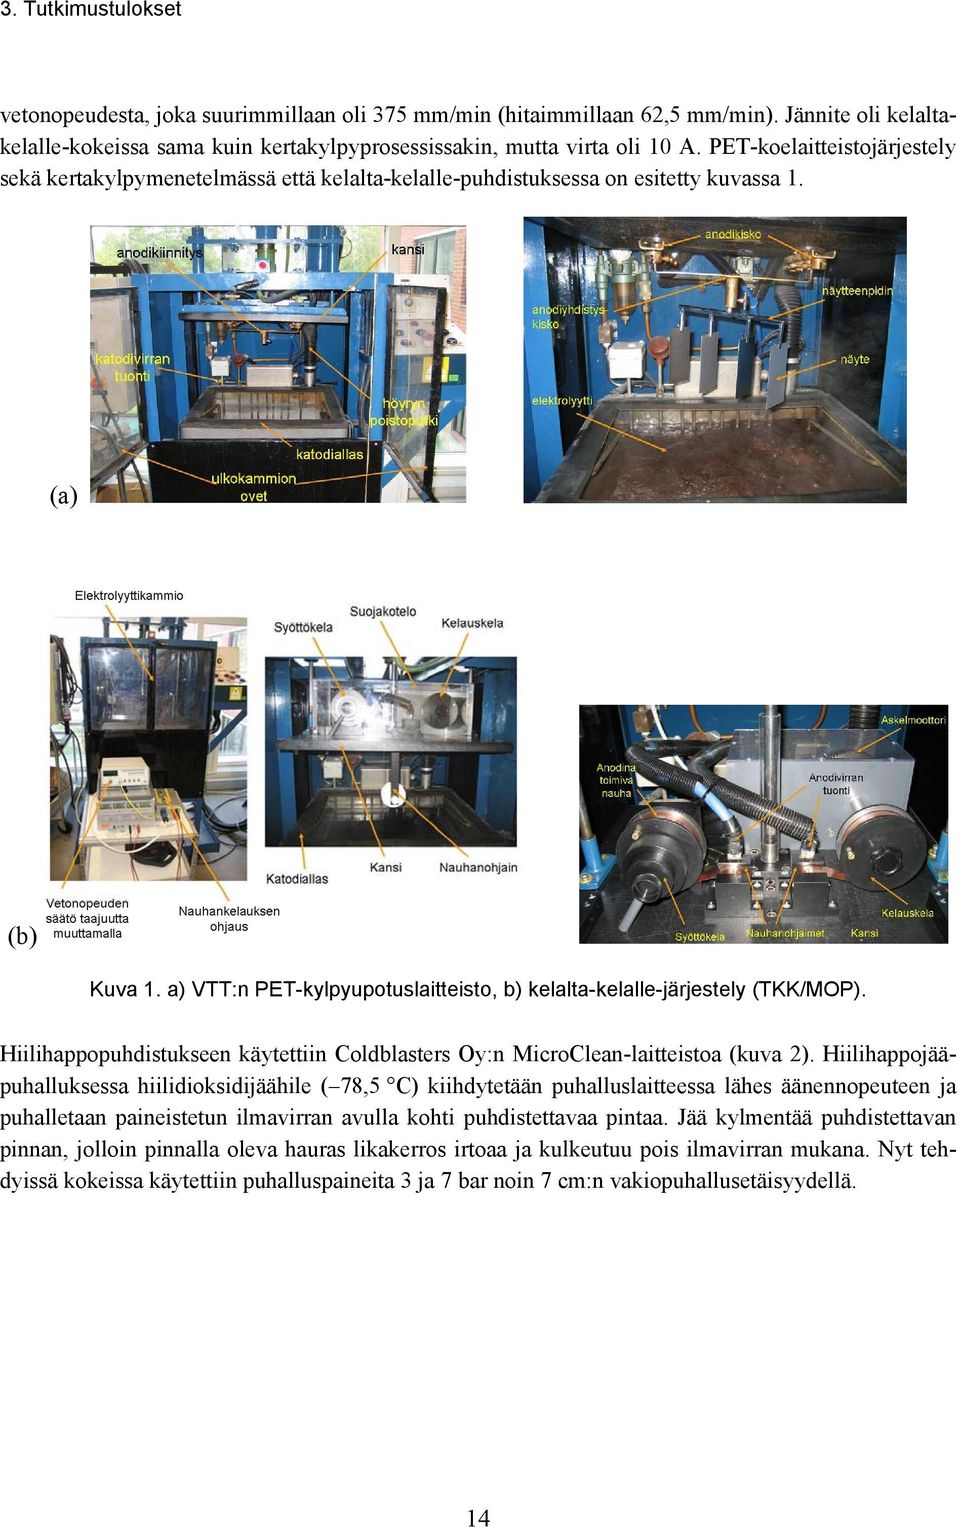 a) VTT:n PET-kylpyupotuslaitteisto, b) kelalta-kelalle-järjestely (TKK/MOP). Hiilihappopuhdistukseen käytettiin Coldblasters Oy:n MicroClean-laitteistoa (kuva 2).